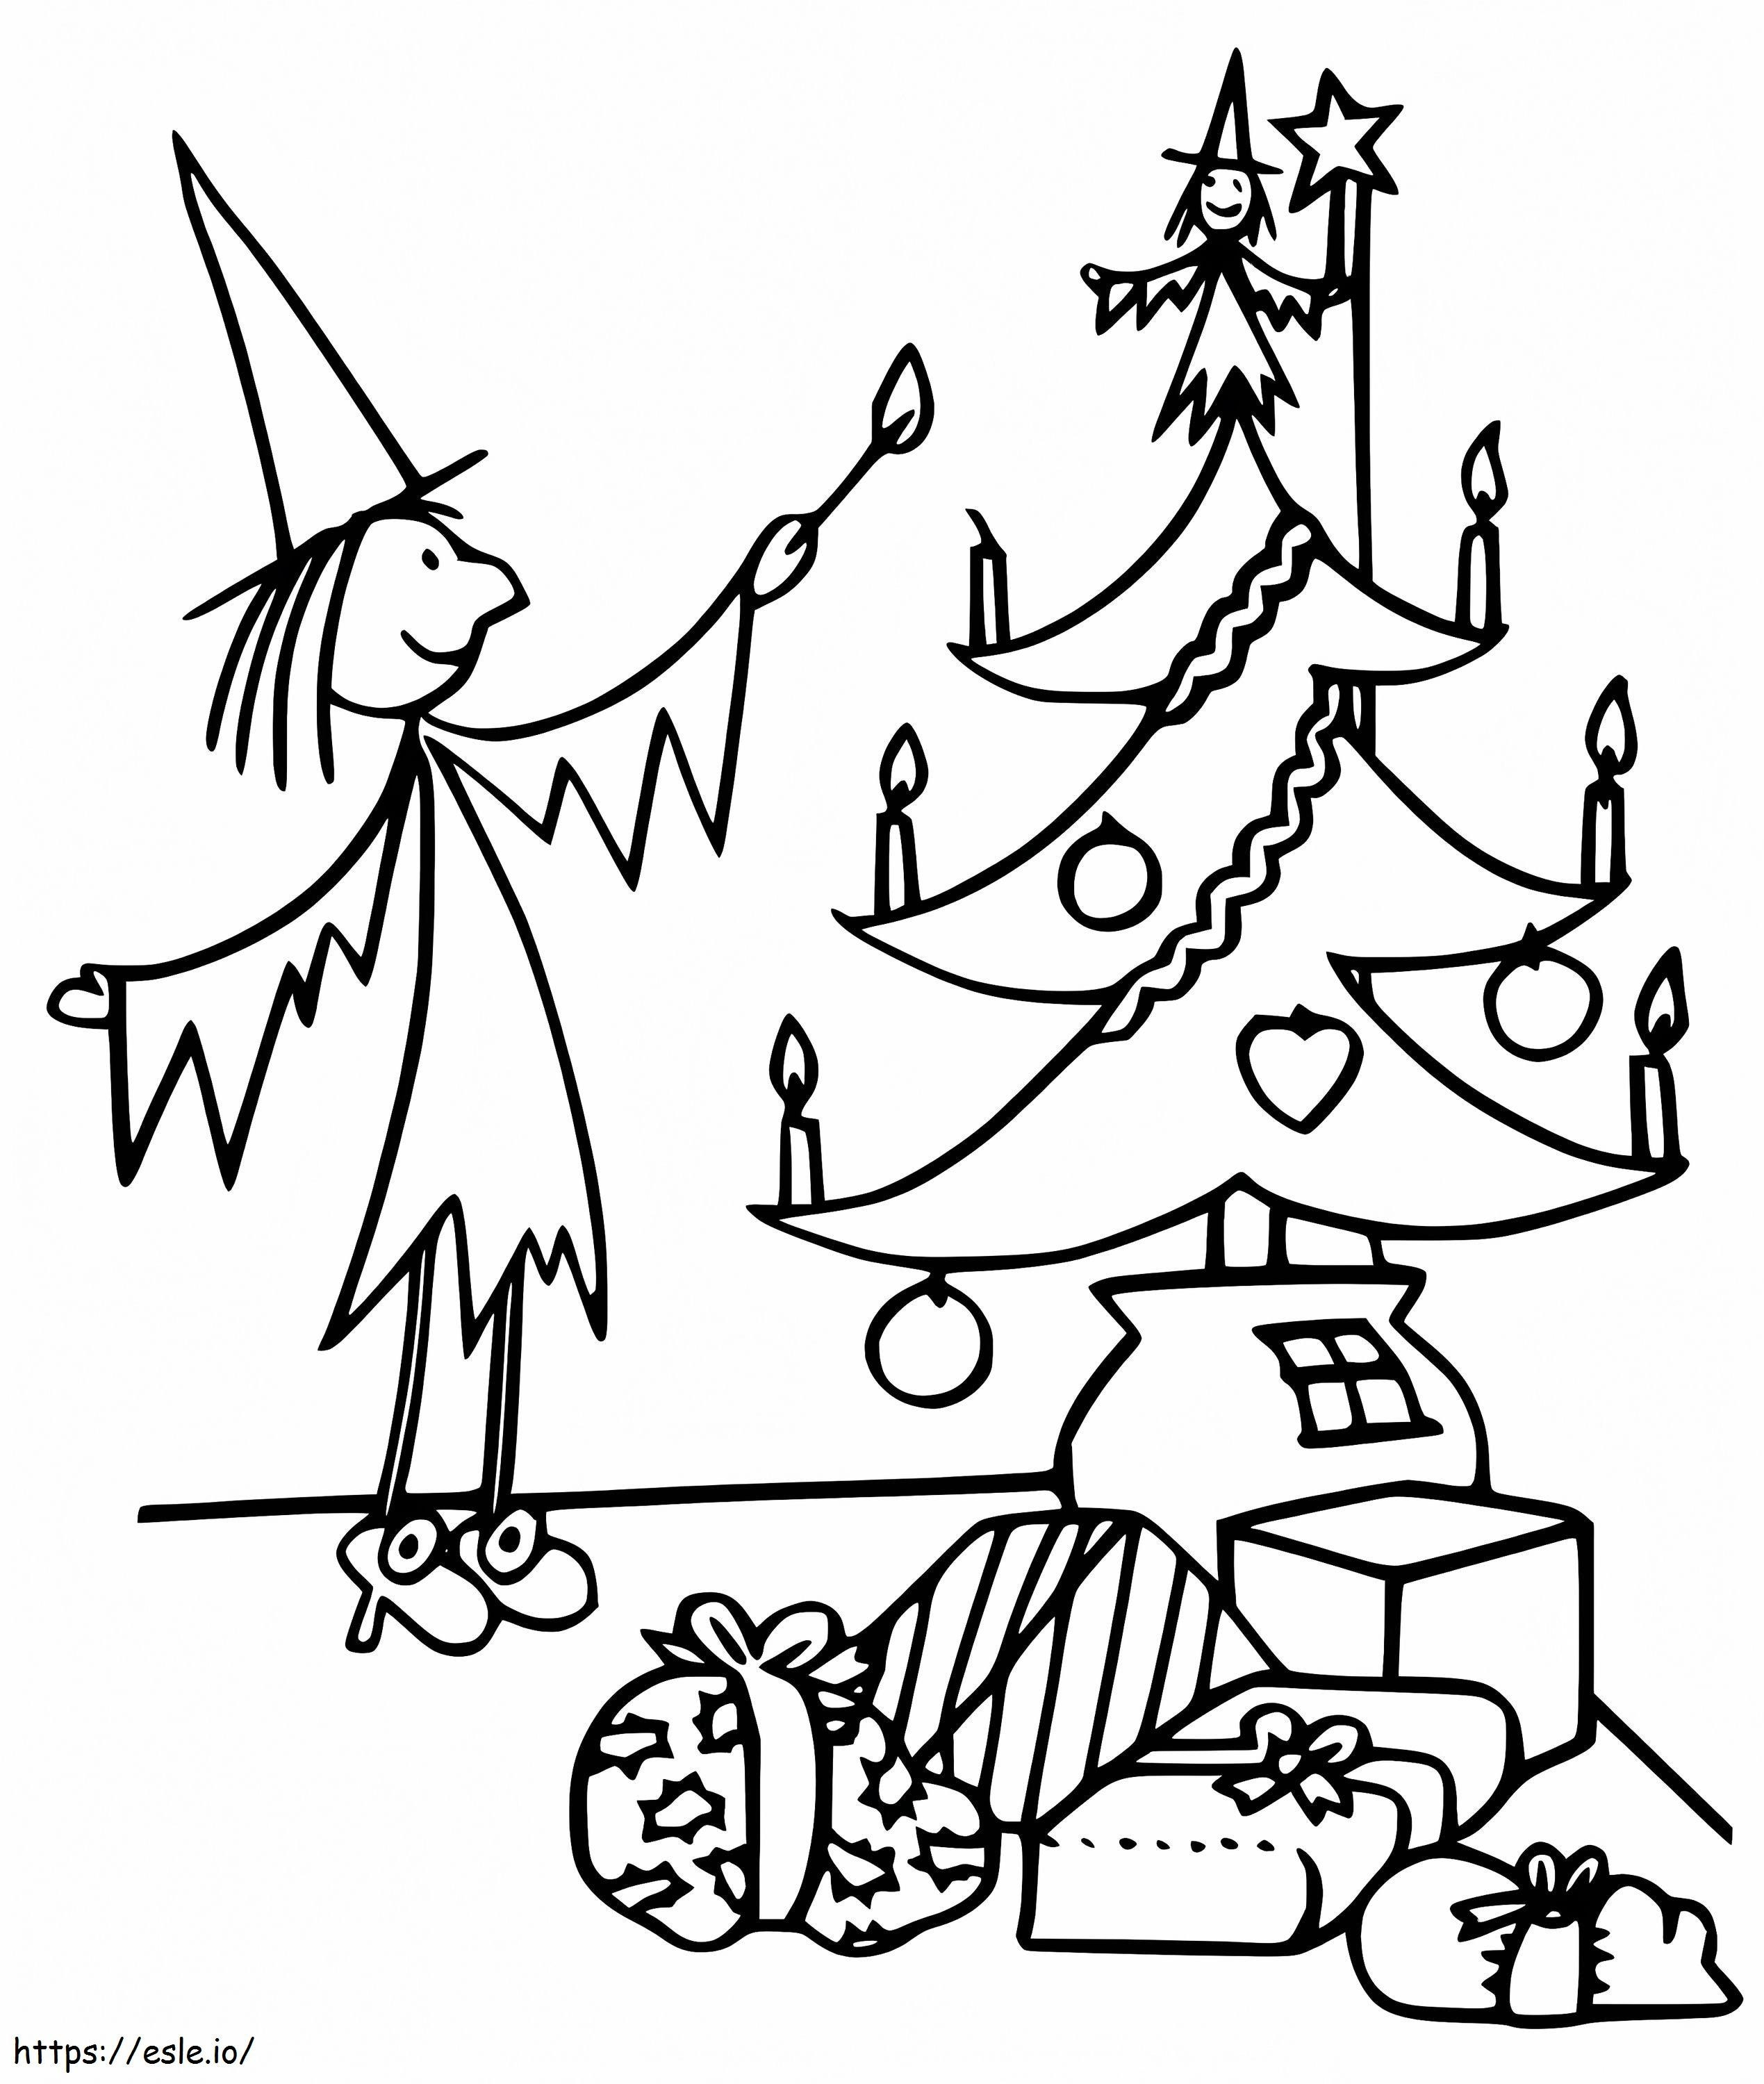 Meg und Weihnachtsbaum ausmalbilder